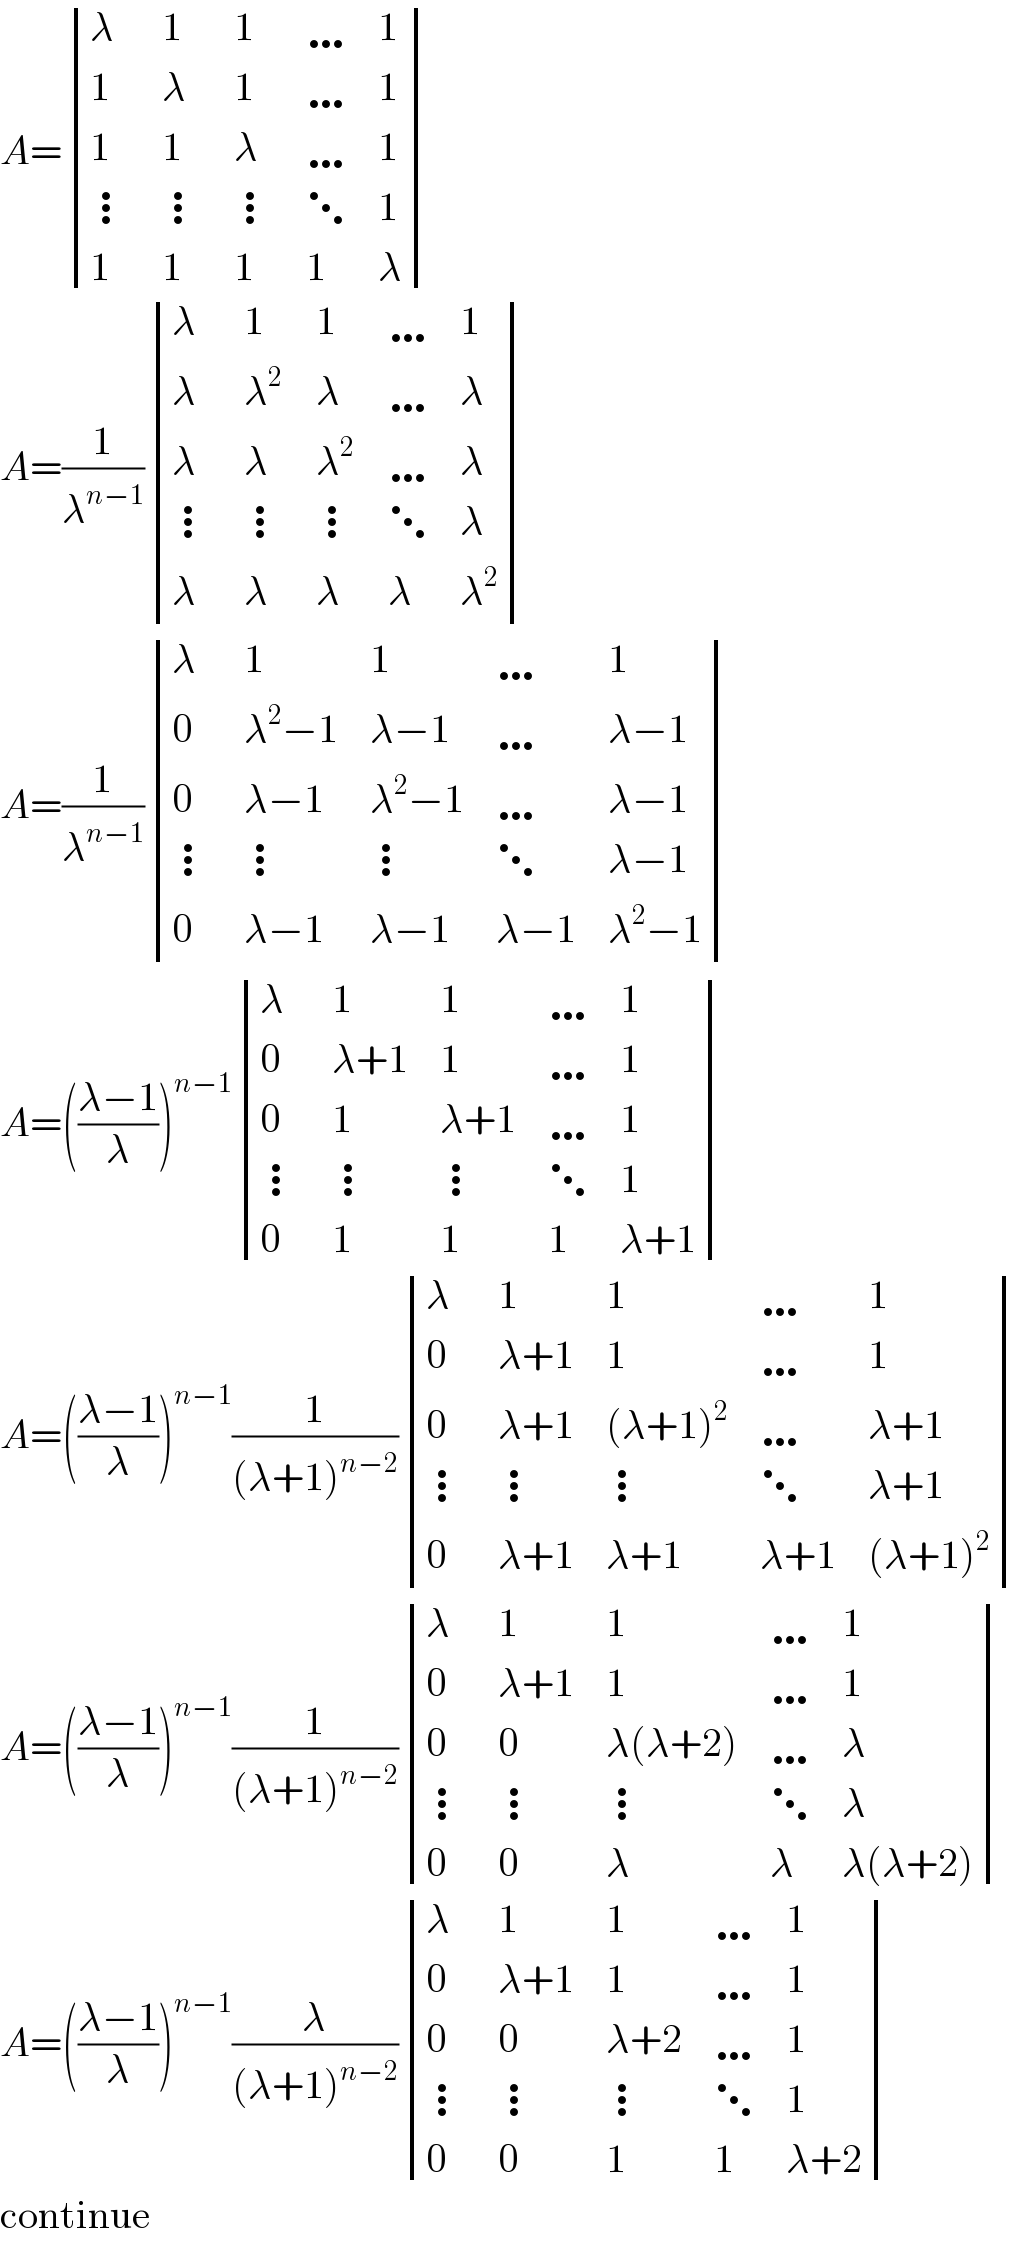 A= determinant ((λ,1,1,…,1),(1,λ,1,…,1),(1,1,λ,…,1),(⋮,⋮,⋮,⋱,1),(1,1,1,1,λ))  A=(1/λ^(n−1) ) determinant ((λ,1,1,…,1),(λ,λ^2 ,λ,…,λ),(λ,λ,λ^2 ,…,λ),(⋮,⋮,⋮,⋱,λ),(λ,λ,λ,λ,λ^2 ))  A=(1/λ^(n−1) ) determinant ((λ,1,1,…,1),(0,(λ^2 −1),(λ−1),…,(λ−1)),(0,(λ−1),(λ^2 −1),…,(λ−1)),(⋮,⋮,⋮,⋱,(λ−1)),(0,(λ−1),(λ−1),(λ−1),(λ^2 −1)))  A=(((λ−1)/λ))^(n−1)  determinant ((λ,1,1,…,1),(0,(λ+1),1,…,1),(0,1,(λ+1),…,1),(⋮,⋮,⋮,⋱,1),(0,1,1,1,(λ+1)))  A=(((λ−1)/λ))^(n−1) (1/((λ+1)^(n−2) )) determinant ((λ,1,1,…,1),(0,(λ+1),1,…,1),(0,(λ+1),((λ+1)^2 ),…,(λ+1)),(⋮,⋮,⋮,⋱,(λ+1)),(0,(λ+1),(λ+1),(λ+1),((λ+1)^2 )))  A=(((λ−1)/λ))^(n−1) (1/((λ+1)^(n−2) )) determinant ((λ,1,1,…,1),(0,(λ+1),1,…,1),(0,0,(λ(λ+2)),…,λ),(⋮,⋮,⋮,⋱,λ),(0,0,λ,λ,(λ(λ+2))))  A=(((λ−1)/λ))^(n−1) (λ/((λ+1)^(n−2) )) determinant ((λ,1,1,…,1),(0,(λ+1),1,…,1),(0,0,(λ+2),…,1),(⋮,⋮,⋮,⋱,1),(0,0,1,1,(λ+2)))  continue  